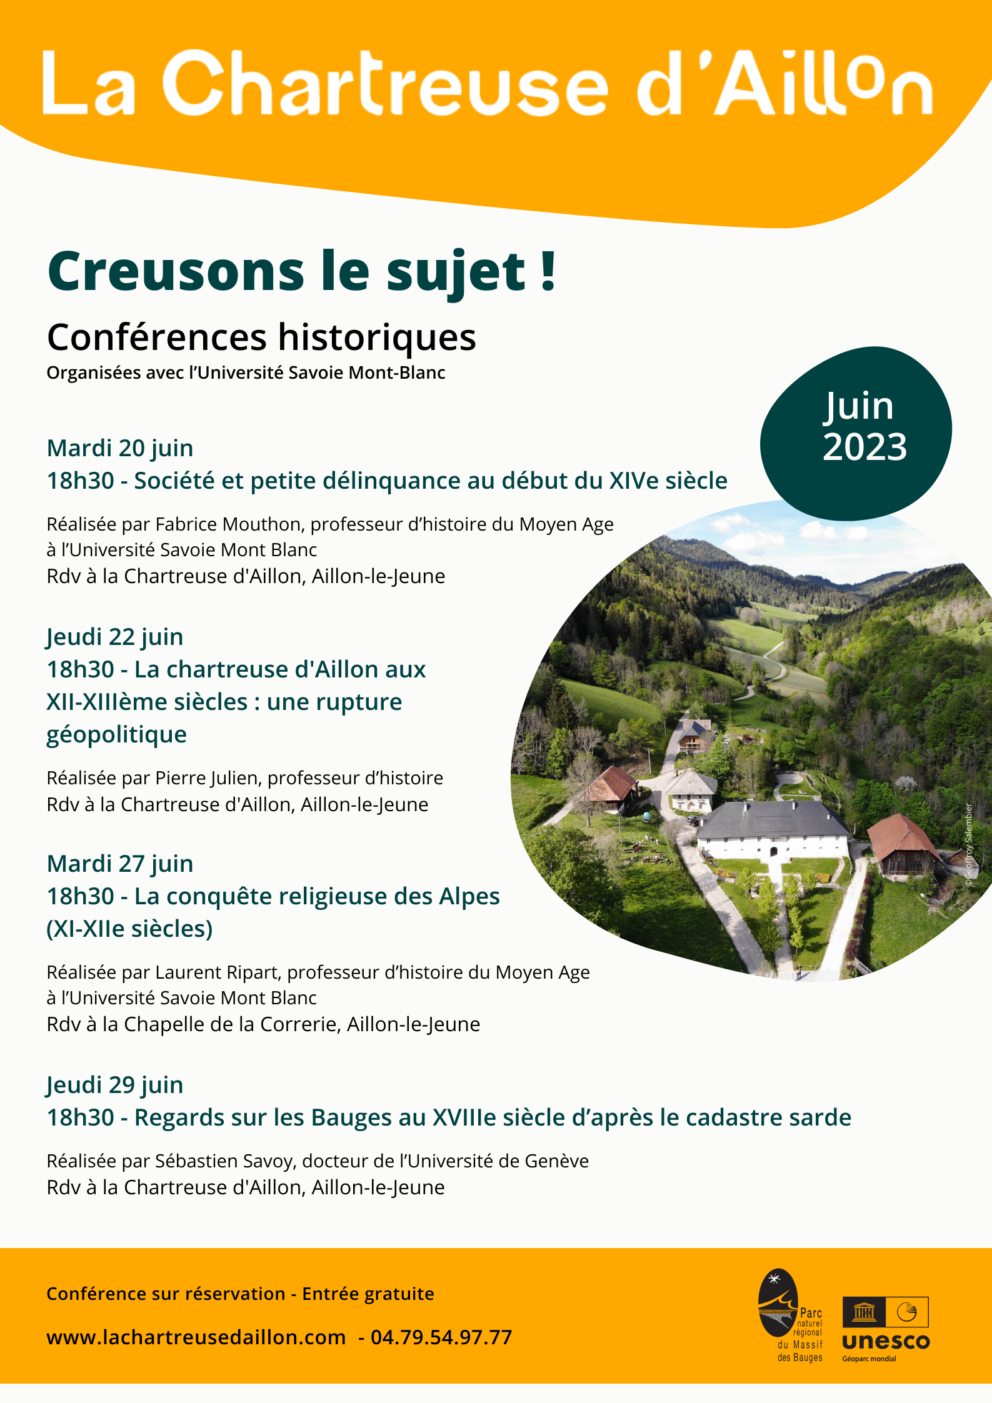 Programme de conférences historiques de la Chartreuse d'Aillon, en juin